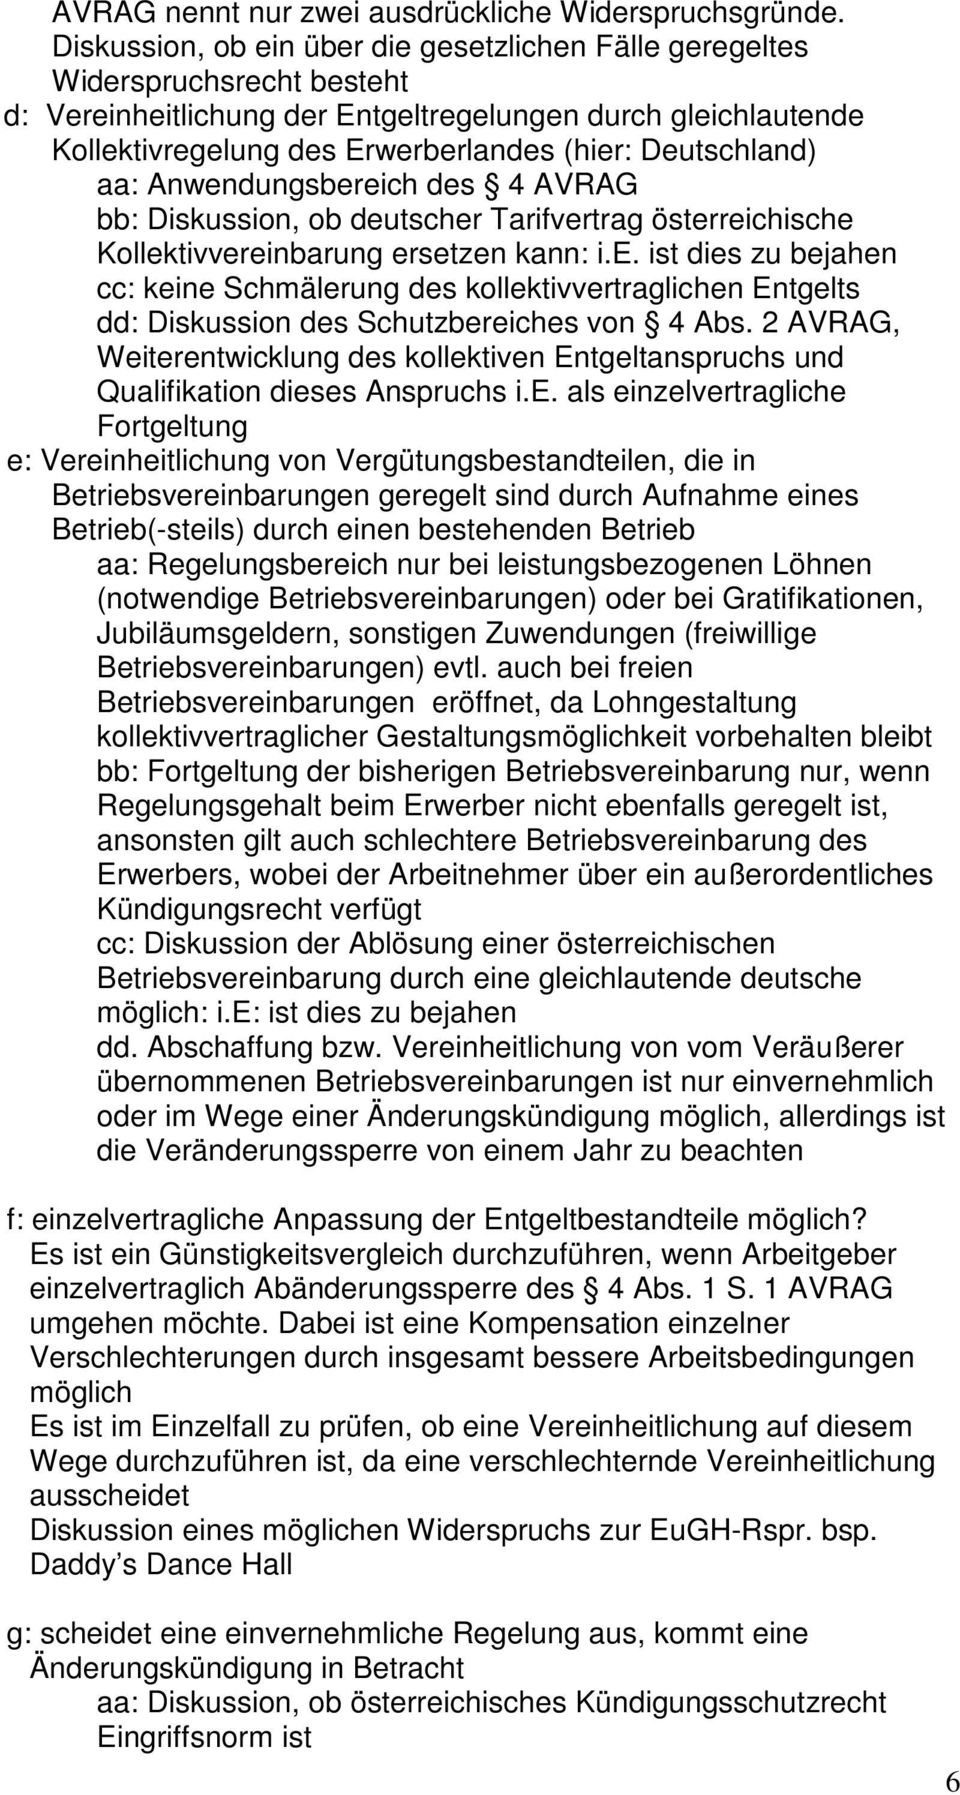 Deutschland) aa: Anwendungsbereich des 4 AVRAG bb: Diskussion, ob deutscher Tarifvertrag österreichische Kollektivvereinbarung ersetzen kann: i.e. ist dies zu bejahen cc: keine Schmälerung des kollektivvertraglichen Entgelts dd: Diskussion des Schutzbereiches von 4 Abs.